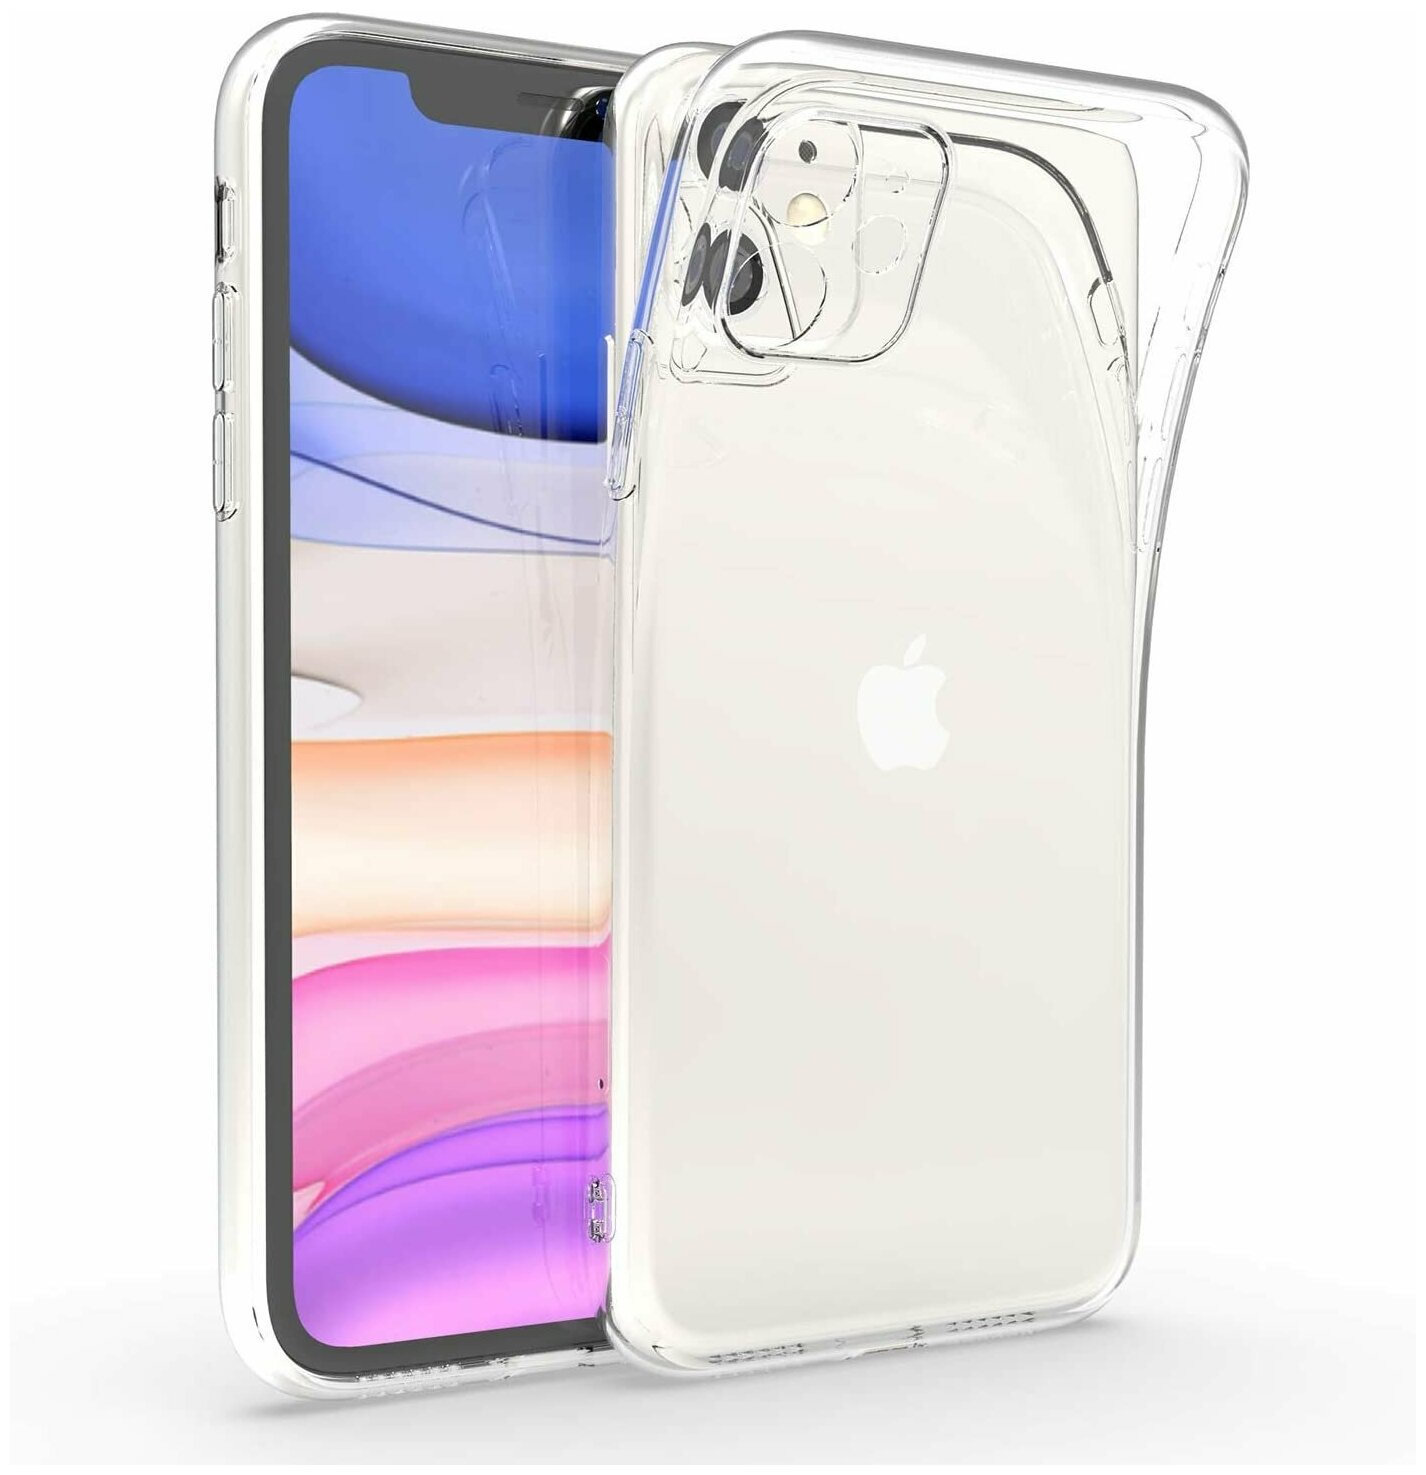 Ультратонкий чехол на Apple iPhone 11 с защитой камеры / Защитный силиконовый чехол для Эпл Айфон 11 / Premium силикон накладка (Прозрачный)